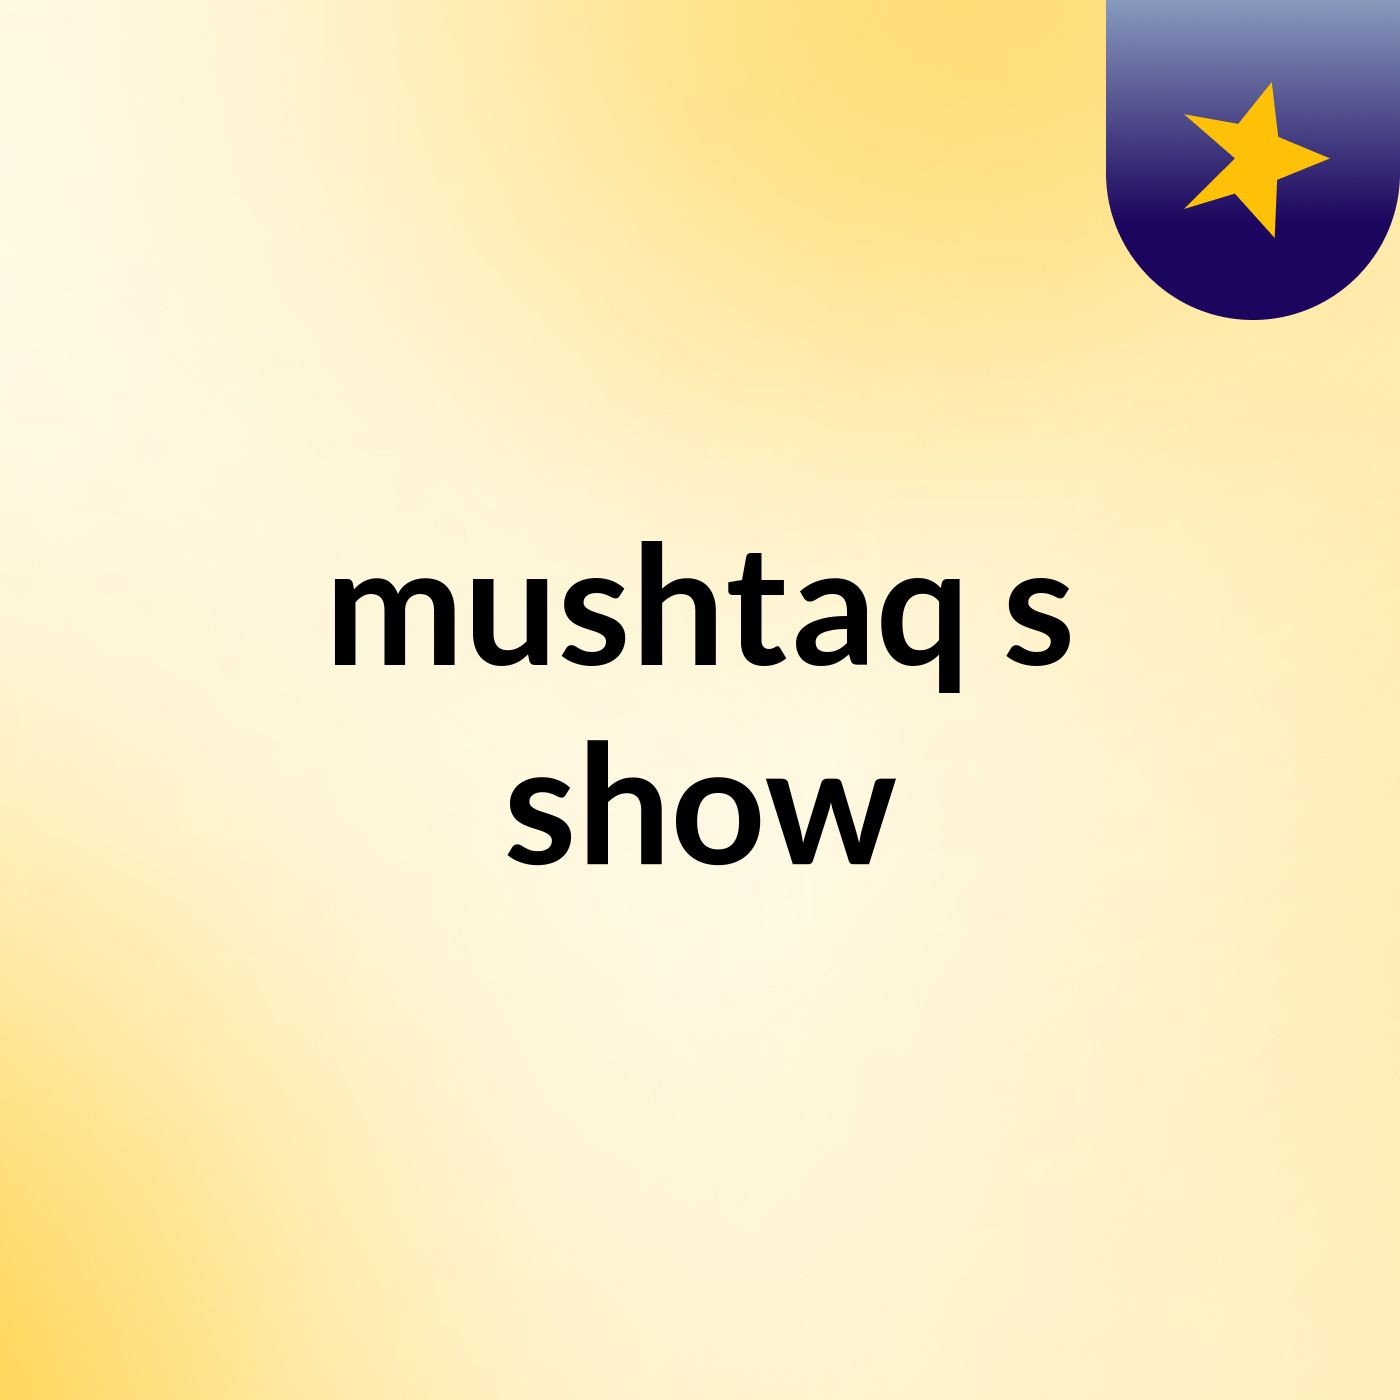 mushtaq's show